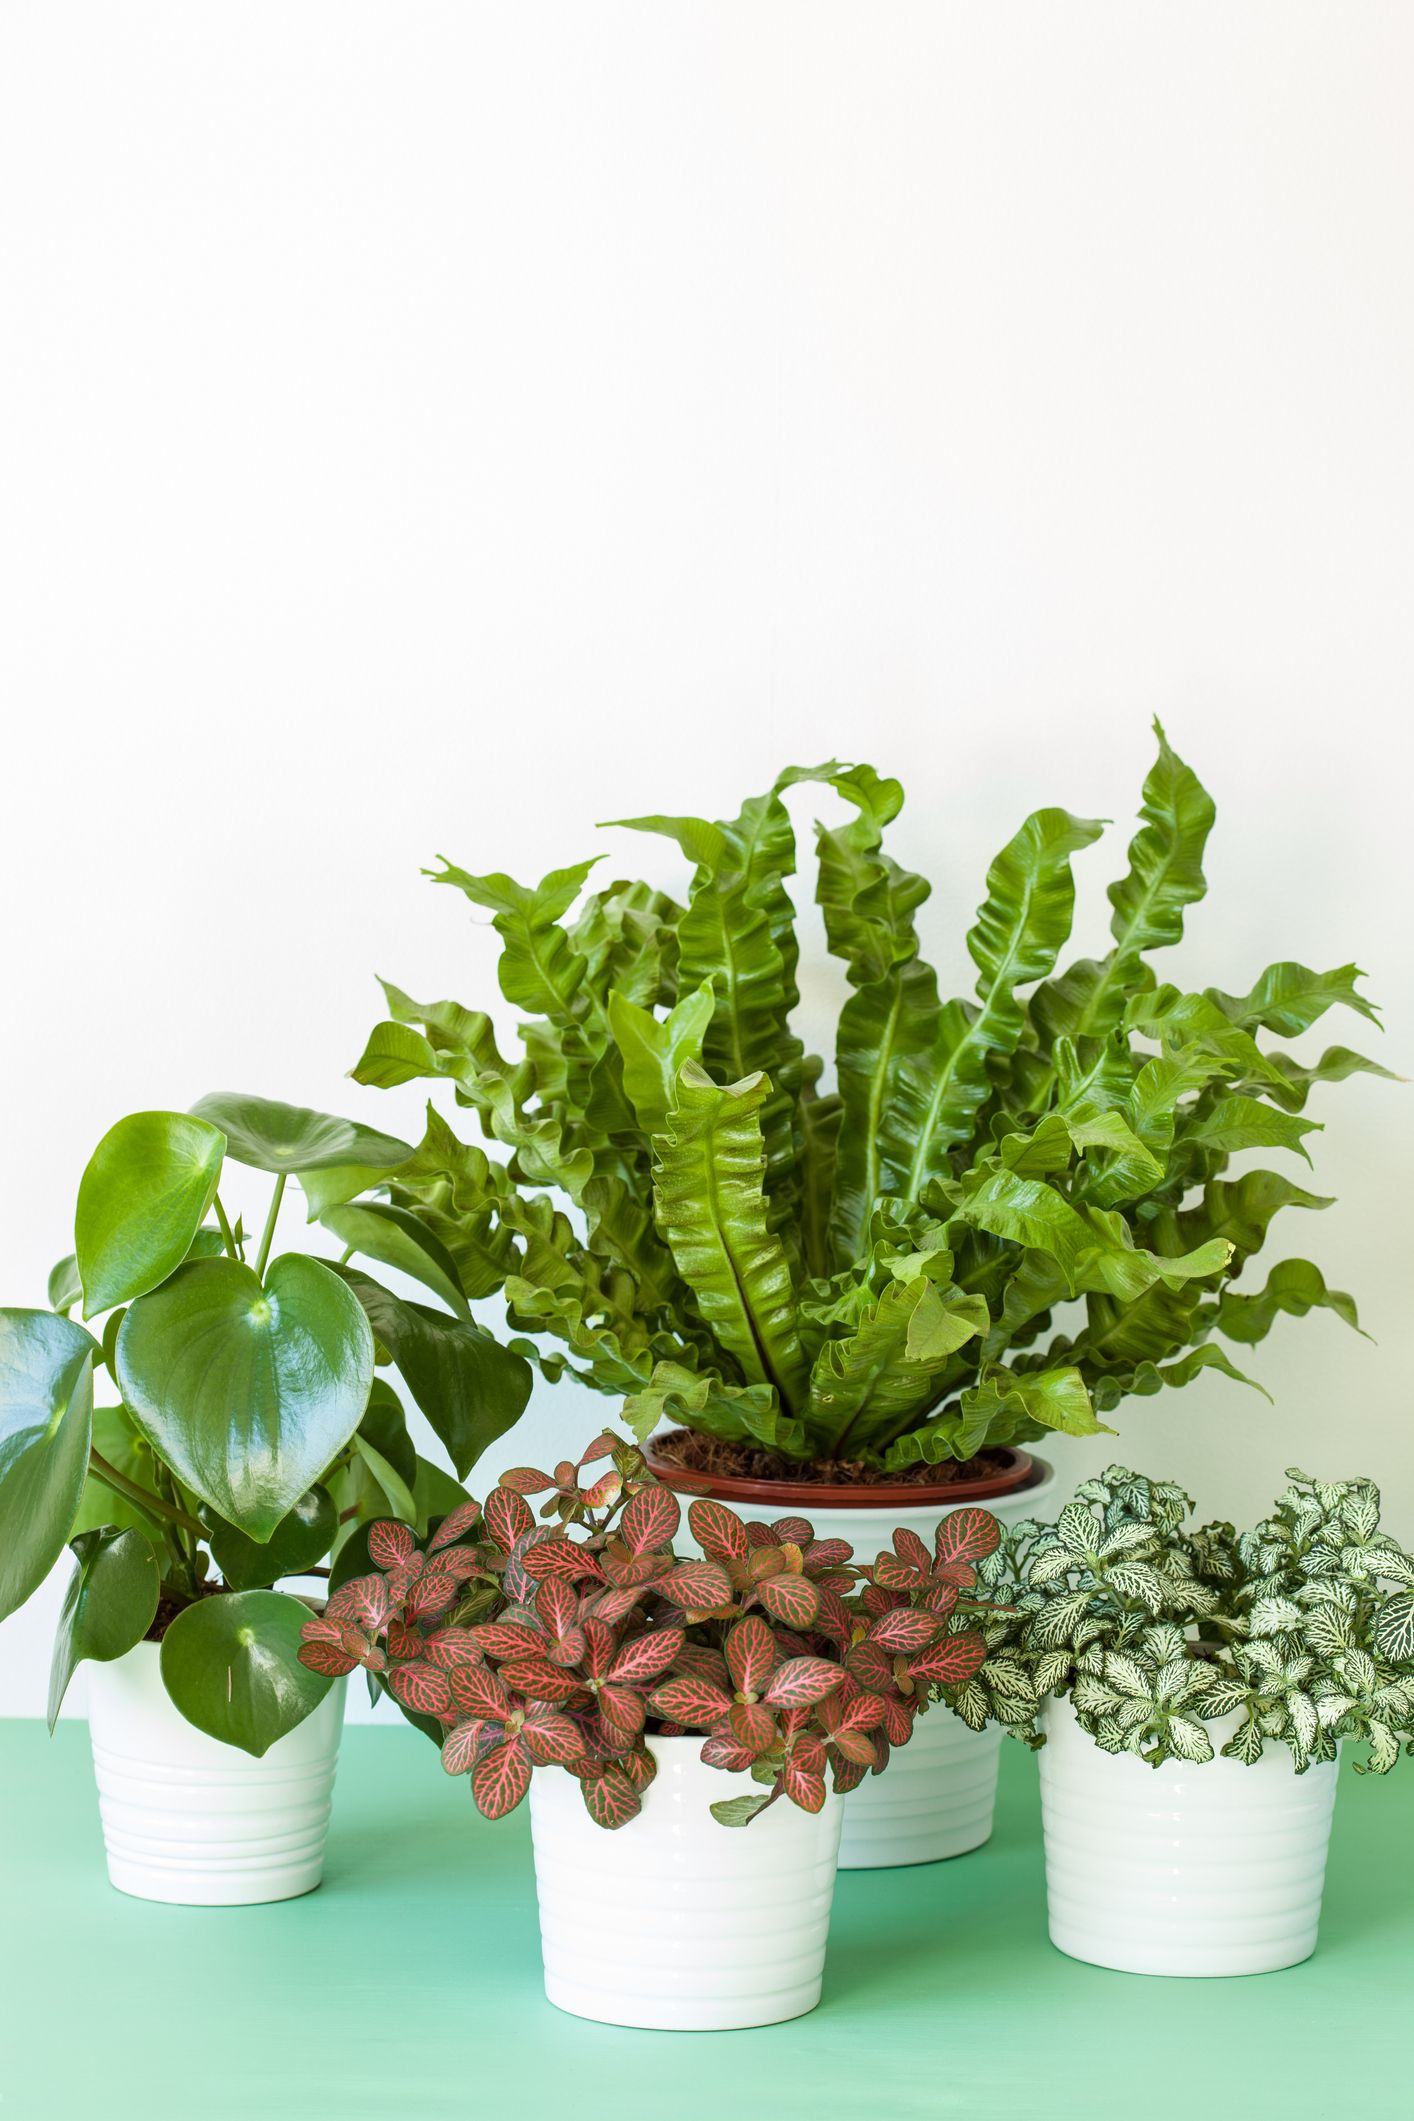 Green indoor house plants